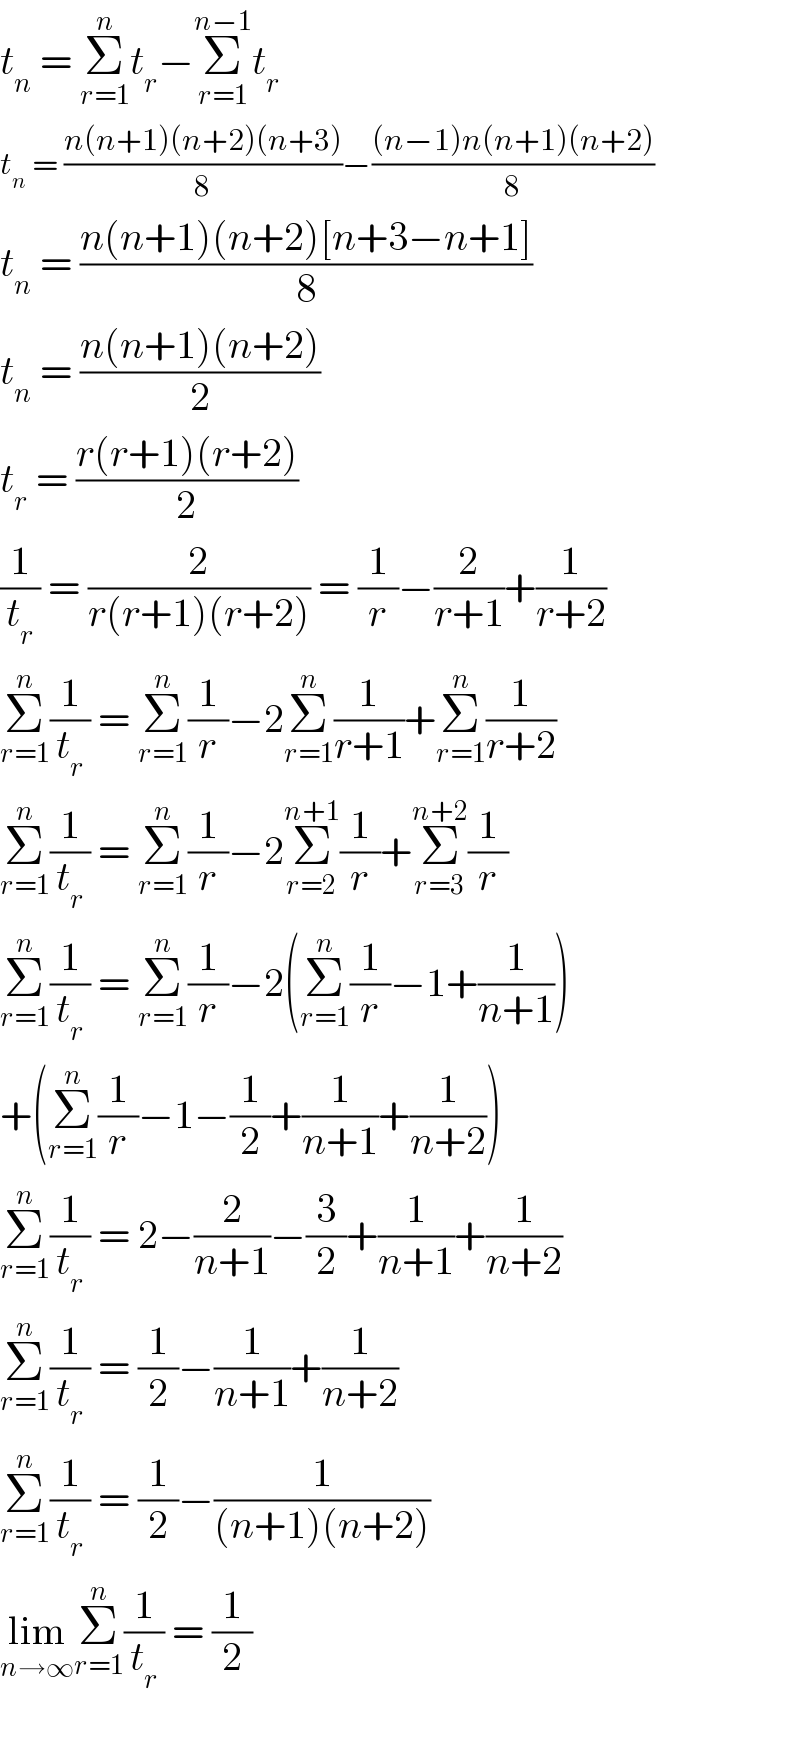 t_n  = Σ_(r=1) ^n t_r −Σ_(r=1) ^(n−1) t_r   t_n  = ((n(n+1)(n+2)(n+3))/8)−(((n−1)n(n+1)(n+2))/8)  t_n  = ((n(n+1)(n+2)[n+3−n+1])/8)  t_n  = ((n(n+1)(n+2))/2)  t_r  = ((r(r+1)(r+2))/2)  (1/t_r ) = (2/(r(r+1)(r+2))) = (1/r)−(2/(r+1))+(1/(r+2))  Σ_(r=1) ^n (1/t_r ) = Σ_(r=1) ^n (1/r)−2Σ_(r=1) ^n (1/(r+1))+Σ_(r=1) ^n (1/(r+2))  Σ_(r=1) ^n (1/t_r ) = Σ_(r=1) ^n (1/r)−2Σ_(r=2) ^(n+1) (1/r)+Σ_(r=3) ^(n+2) (1/r)  Σ_(r=1) ^n (1/t_r ) = Σ_(r=1) ^n (1/r)−2(Σ_(r=1) ^n (1/r)−1+(1/(n+1)))  +(Σ_(r=1) ^n (1/r)−1−(1/2)+(1/(n+1))+(1/(n+2)))  Σ_(r=1) ^n (1/t_r ) = 2−(2/(n+1))−(3/2)+(1/(n+1))+(1/(n+2))  Σ_(r=1) ^n (1/t_r ) = (1/2)−(1/(n+1))+(1/(n+2))  Σ_(r=1) ^n (1/t_r ) = (1/2)−(1/((n+1)(n+2)))  lim_(n→∞) Σ_(r=1) ^n (1/t_r ) = (1/2)    